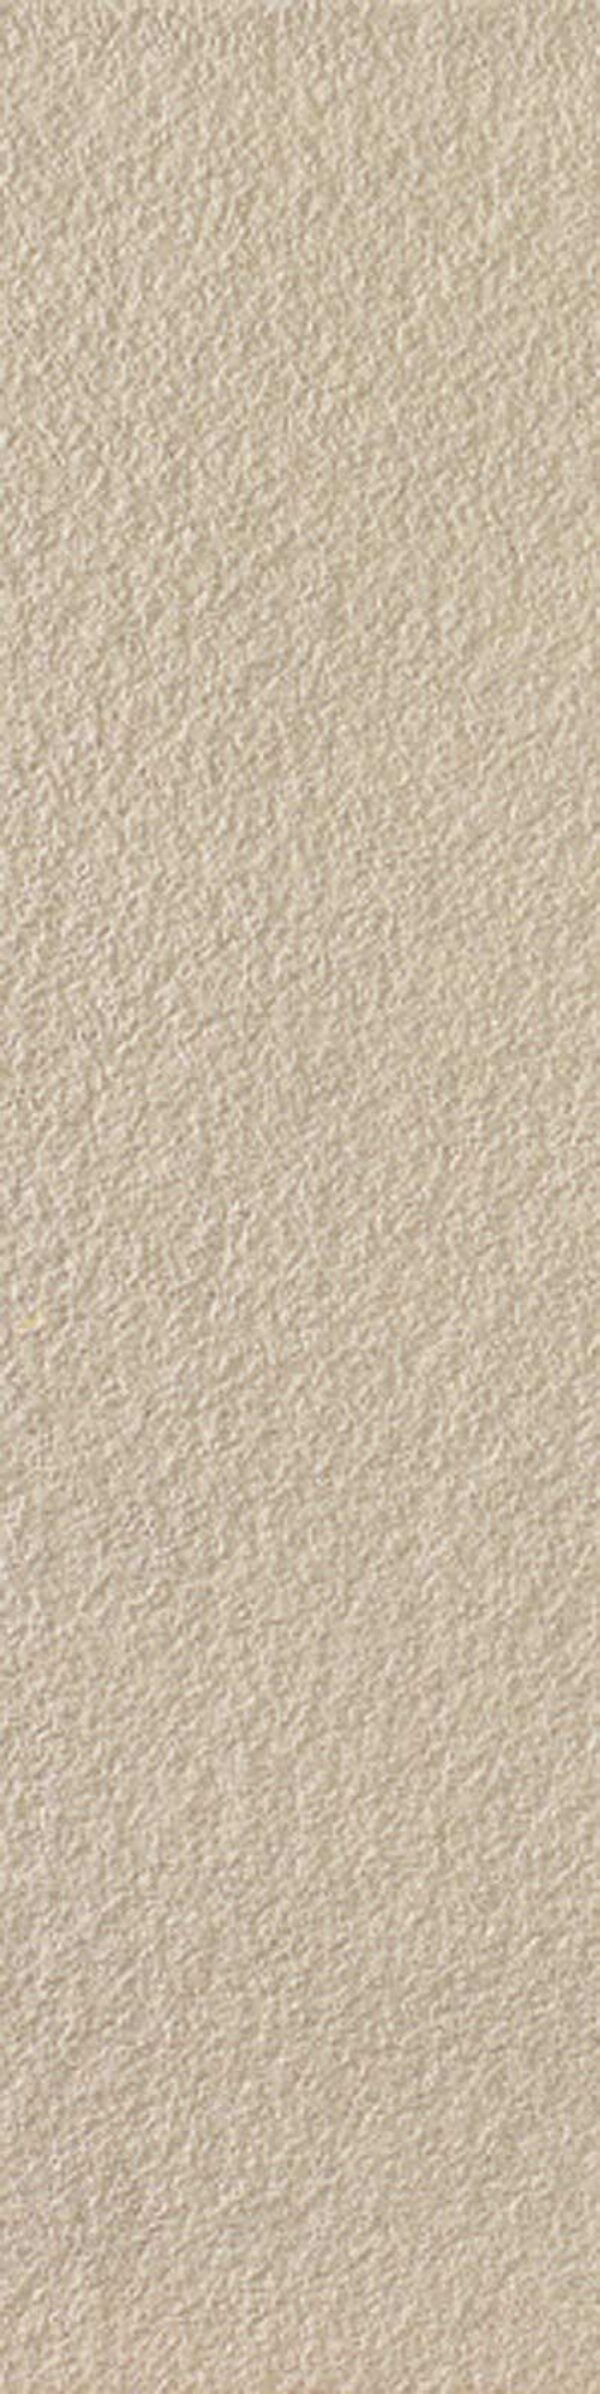 Gresie spatii publice Marazzi Neutro Sabbia Bocciardato 15x60 cm Rectificata M84L